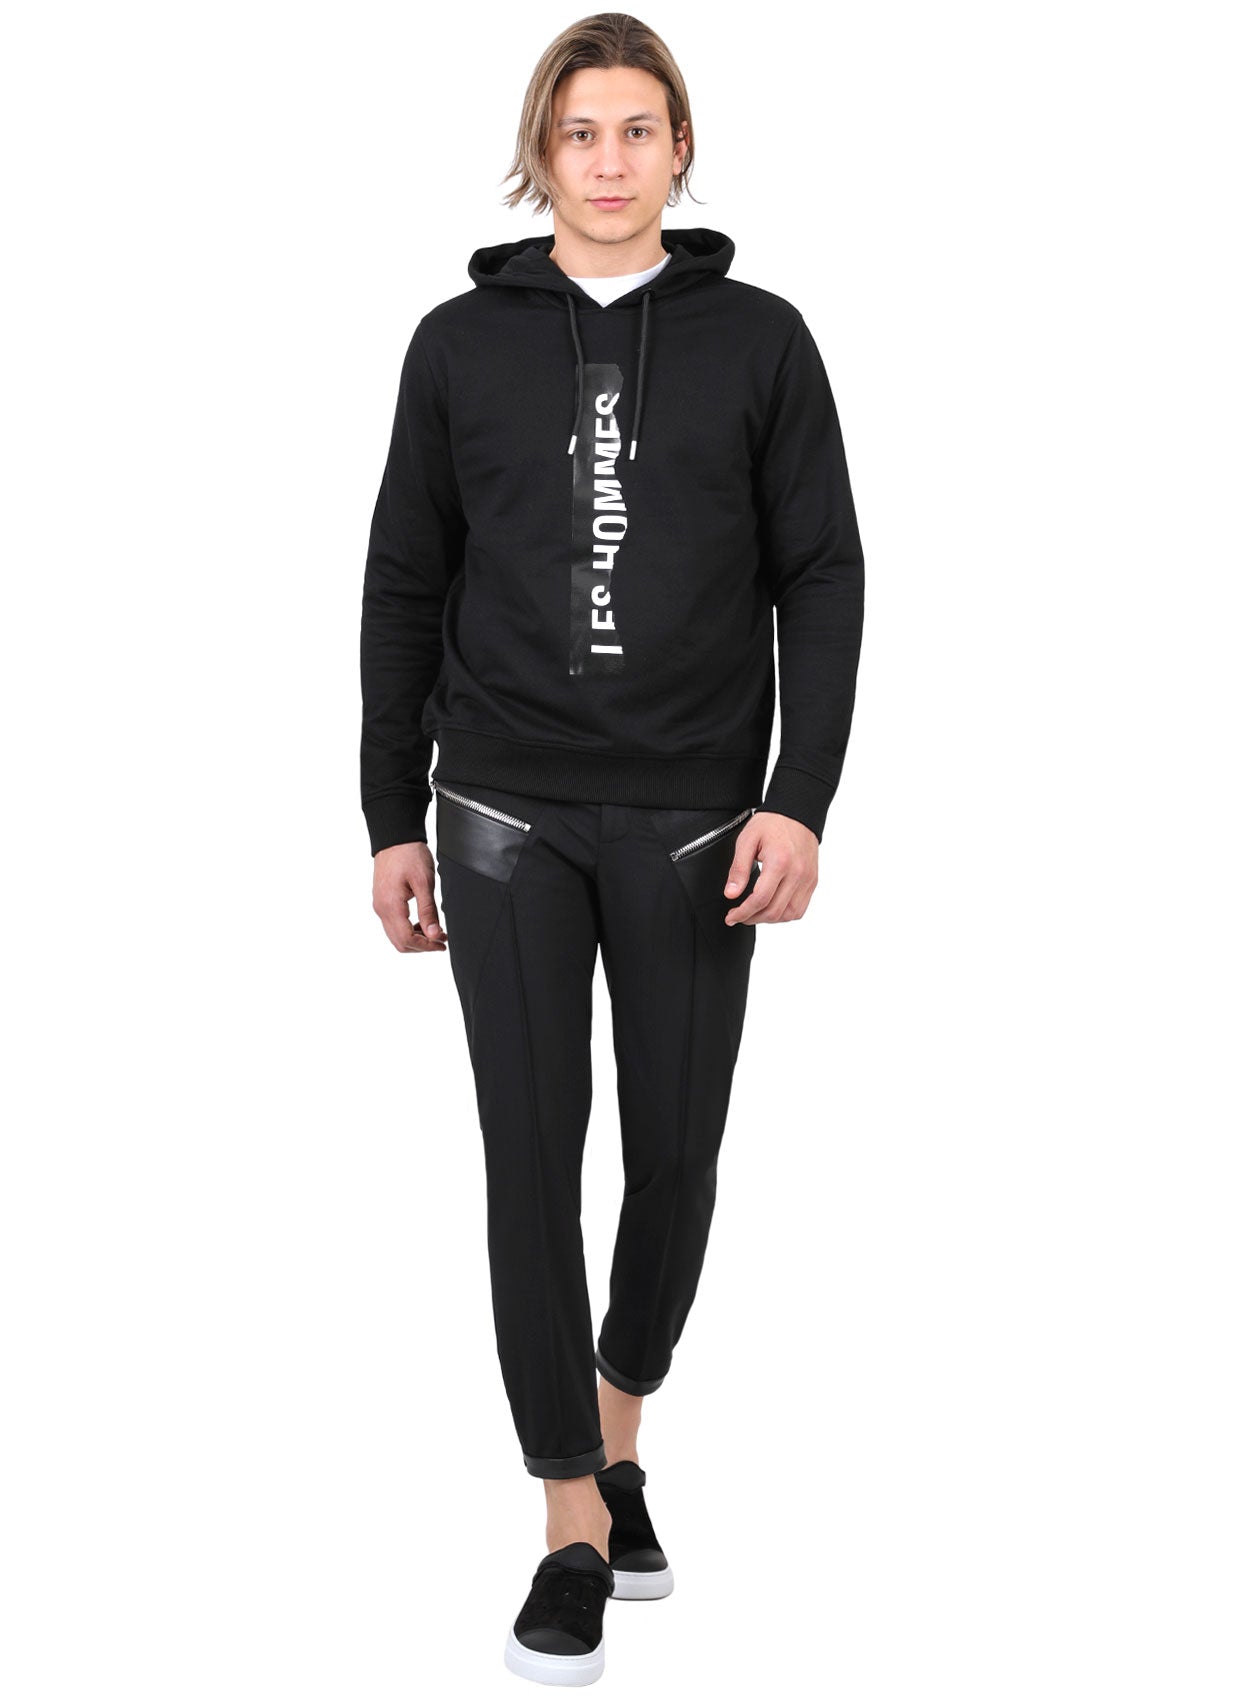 Les Hommes Sweatshirt-Libas Trendy Fashion Store